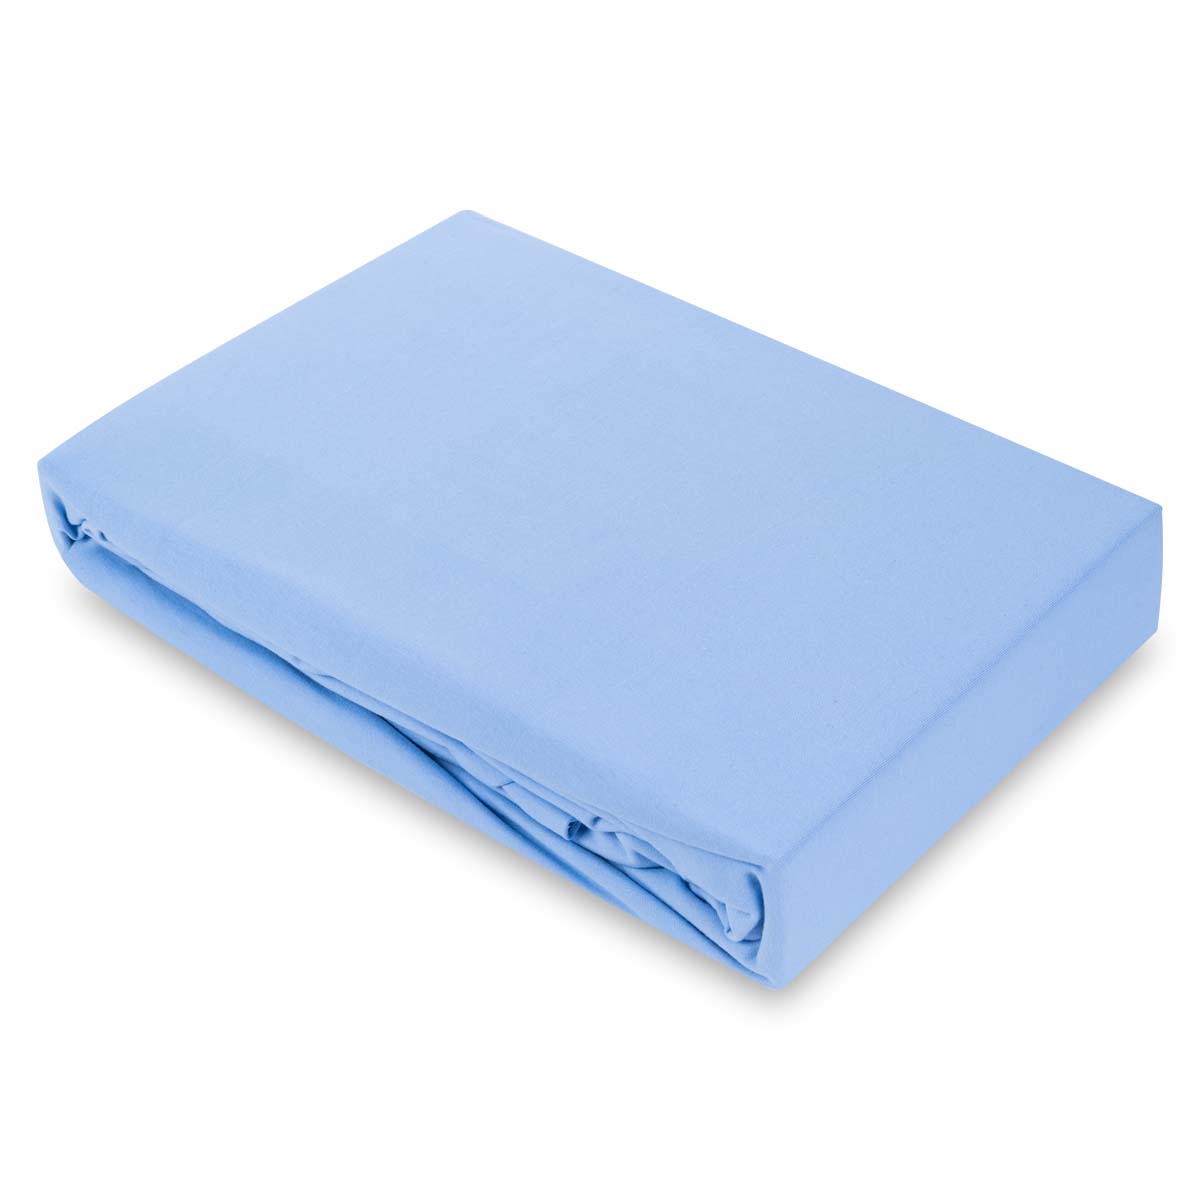 Простыня натяжная 2-спальная Pappel 180x220см, цвет светло-голубой Pappel 180220-35/Light Blue 21